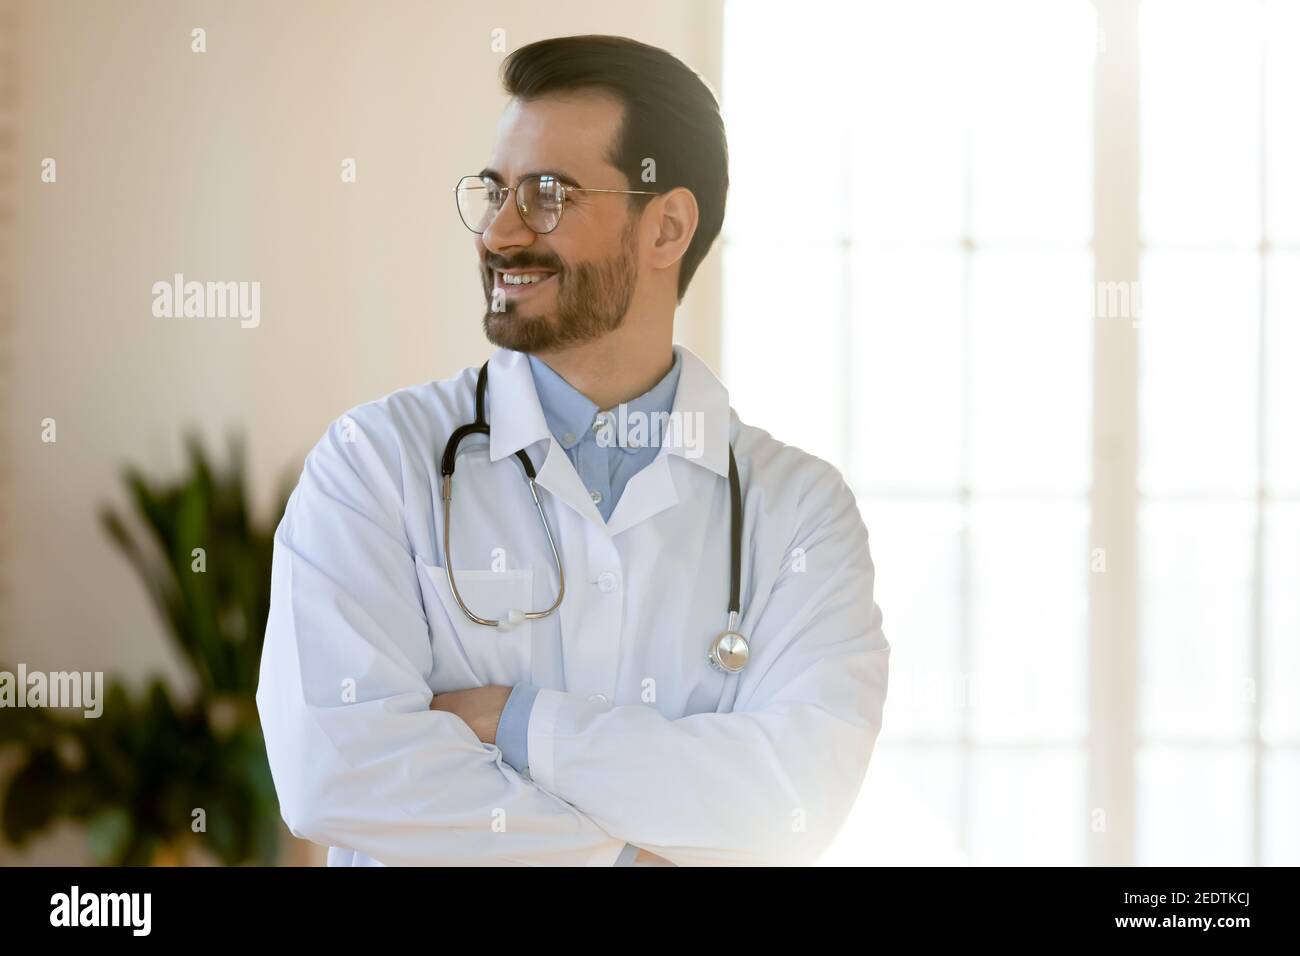 Lächelnd junge gut aussehende professionelle Arzt suchen in der Ferne. Stockfoto